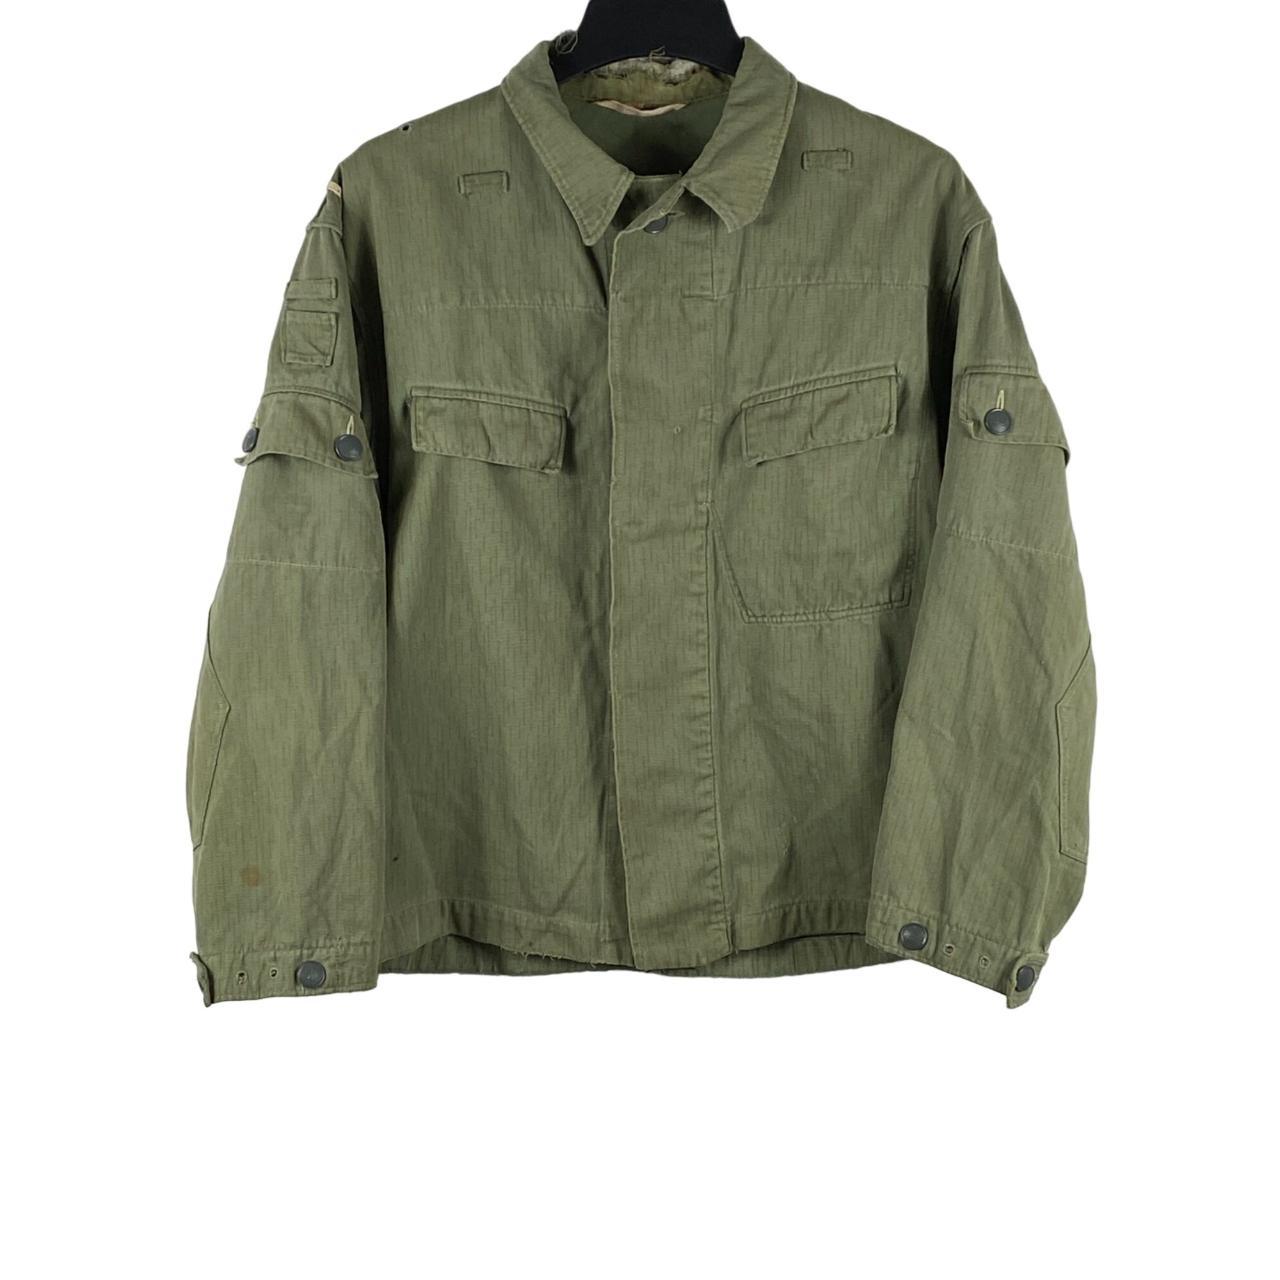 Vintage German Military Jacket Olive Green Men's... - Depop